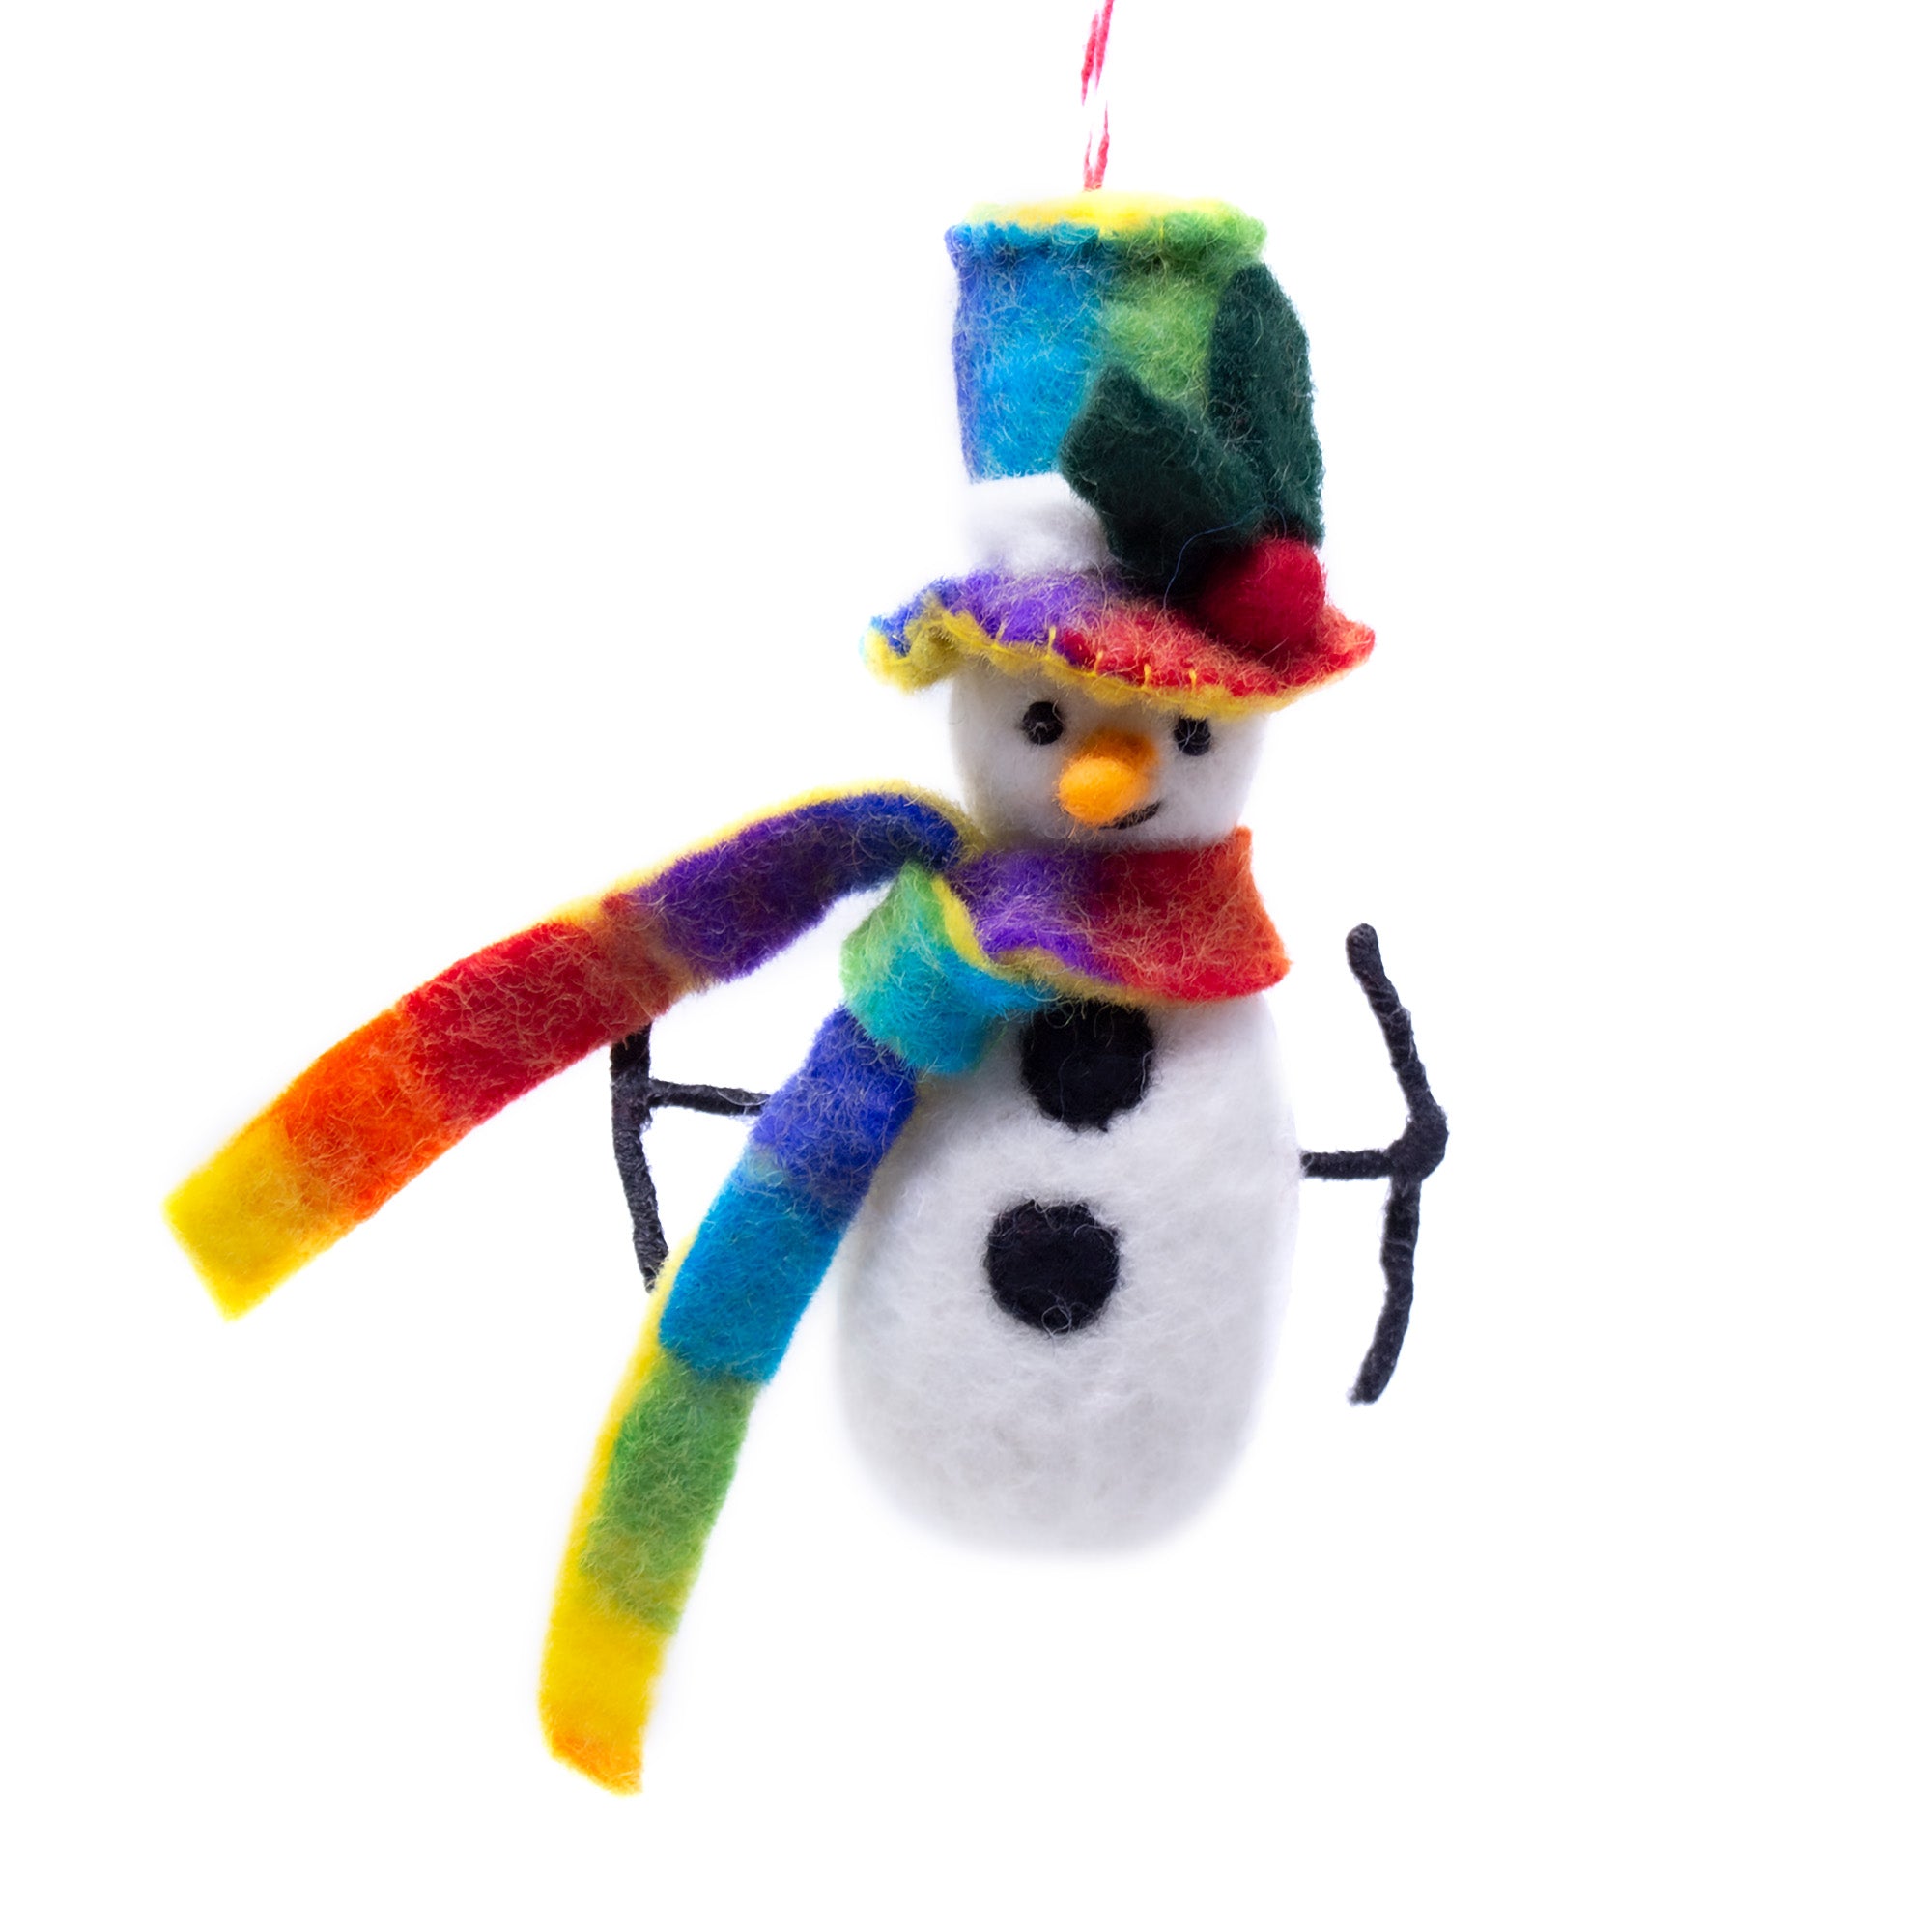 Technicolor Snowman Handmade Felt Ornament